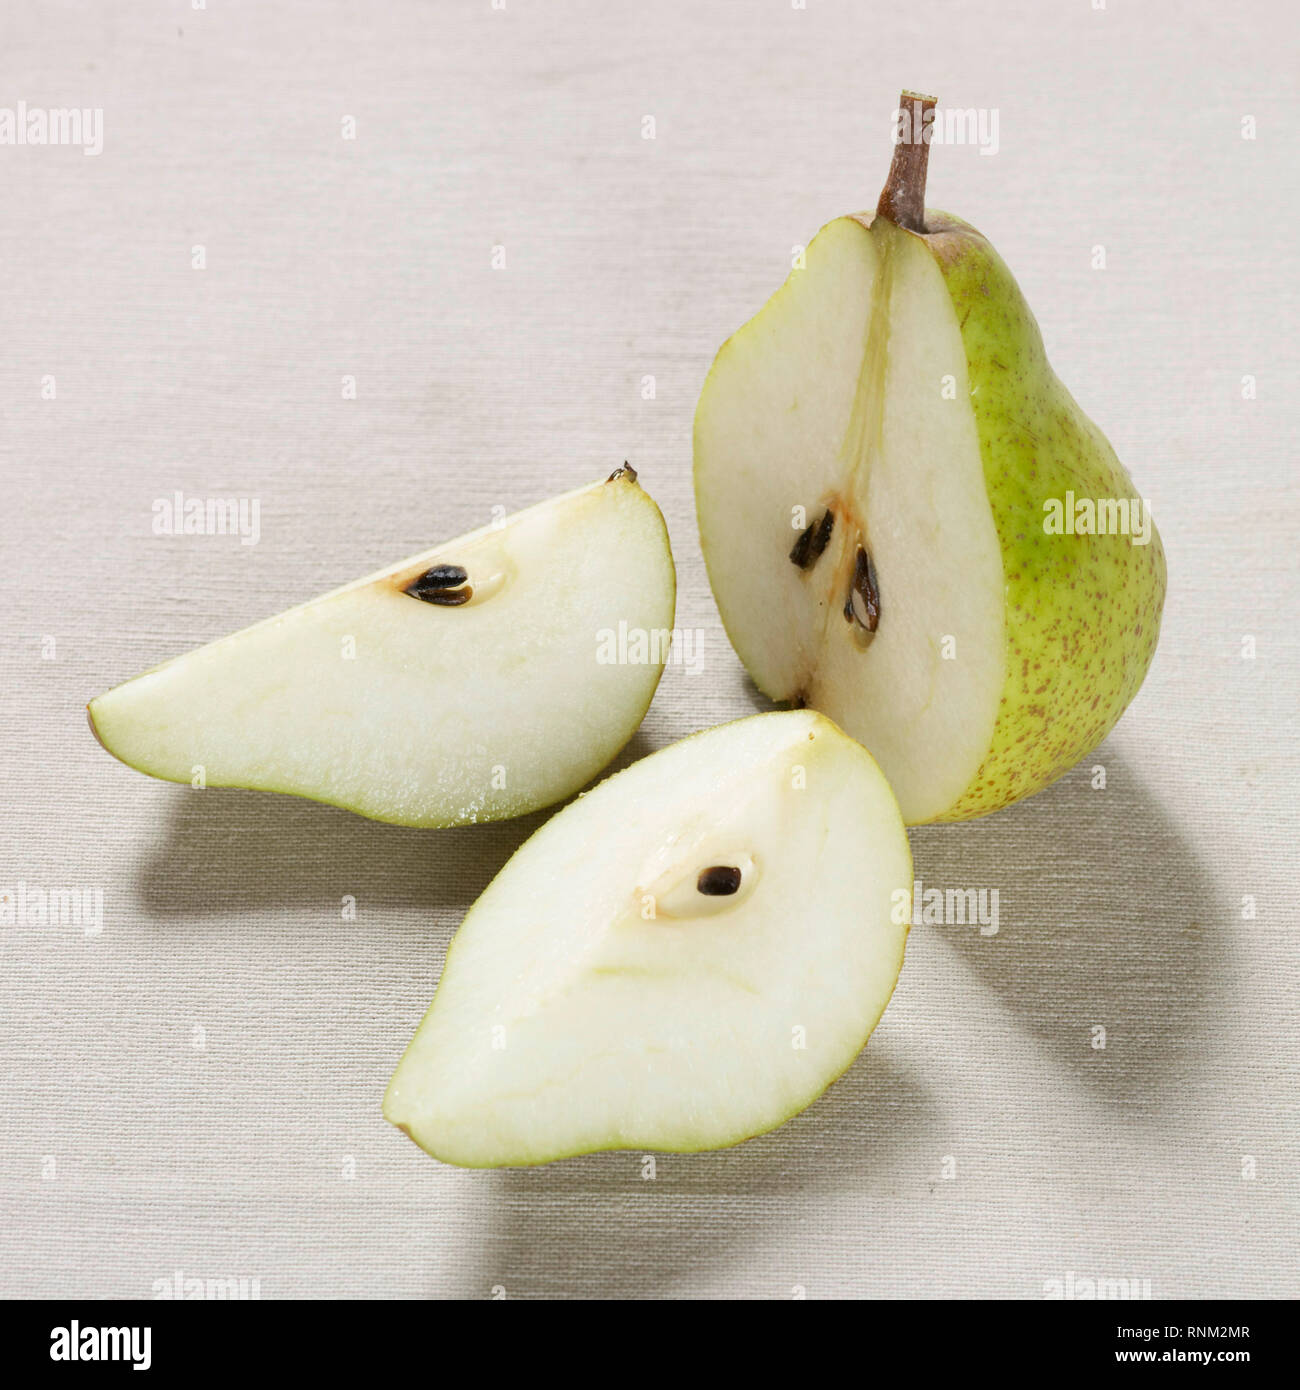 La pera comune, pera europea (Pyrus communis), frutti maturi, dimezzata. Studio Immagine contro uno sfondo bianco Foto Stock